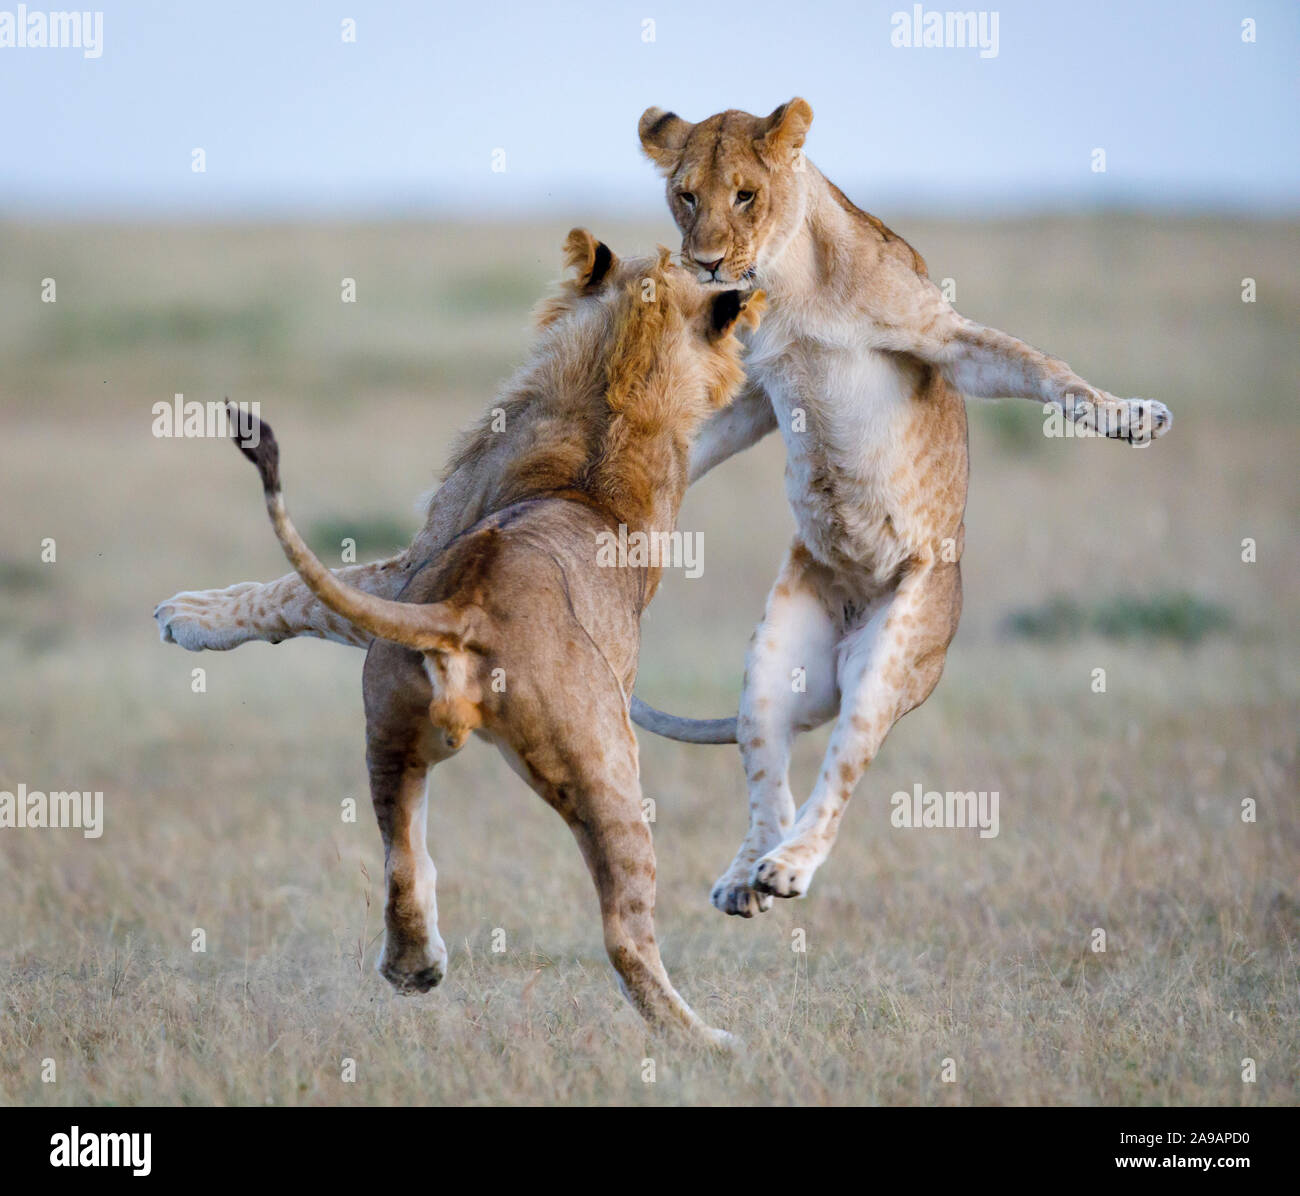 AFRICA: due adolescenti showoff lions loro matrice-style si muove. A ballare la afrobeat! Notevoli le foto mostrano una vasta varietà di animali africani puntone Foto Stock